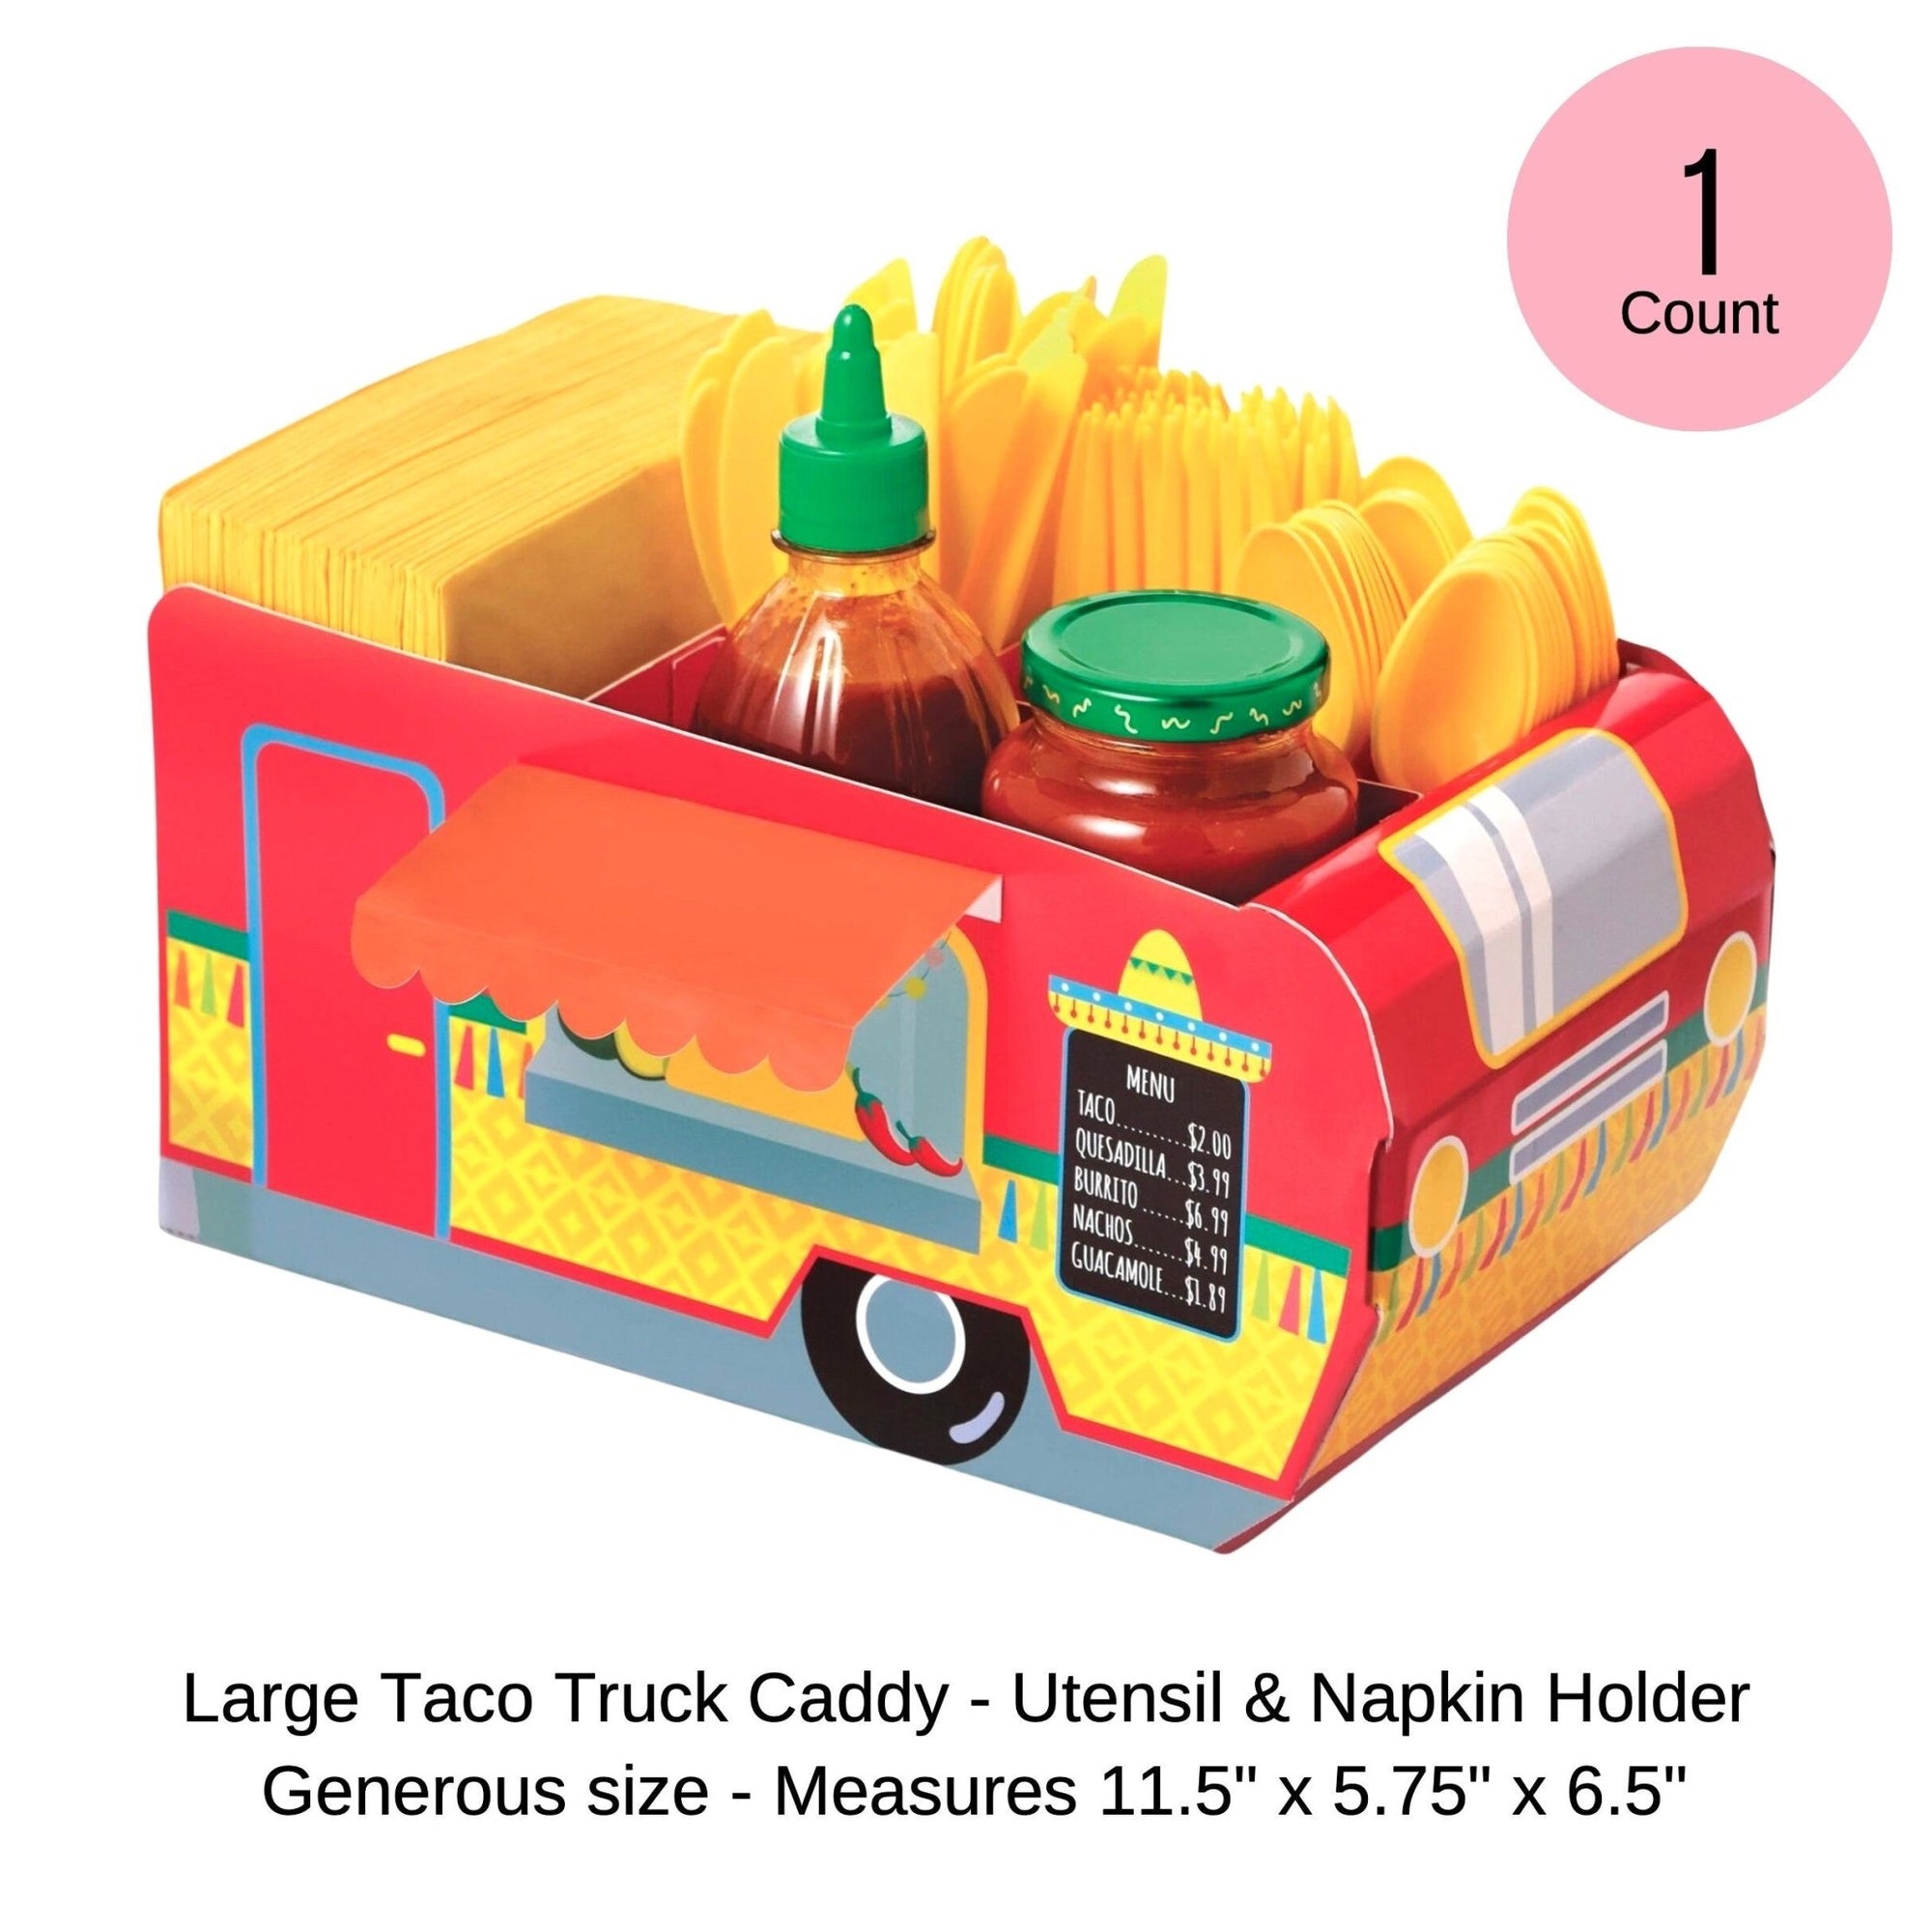 Fiesta Taco Truck Utensil & Napkin Holder - Stesha Party